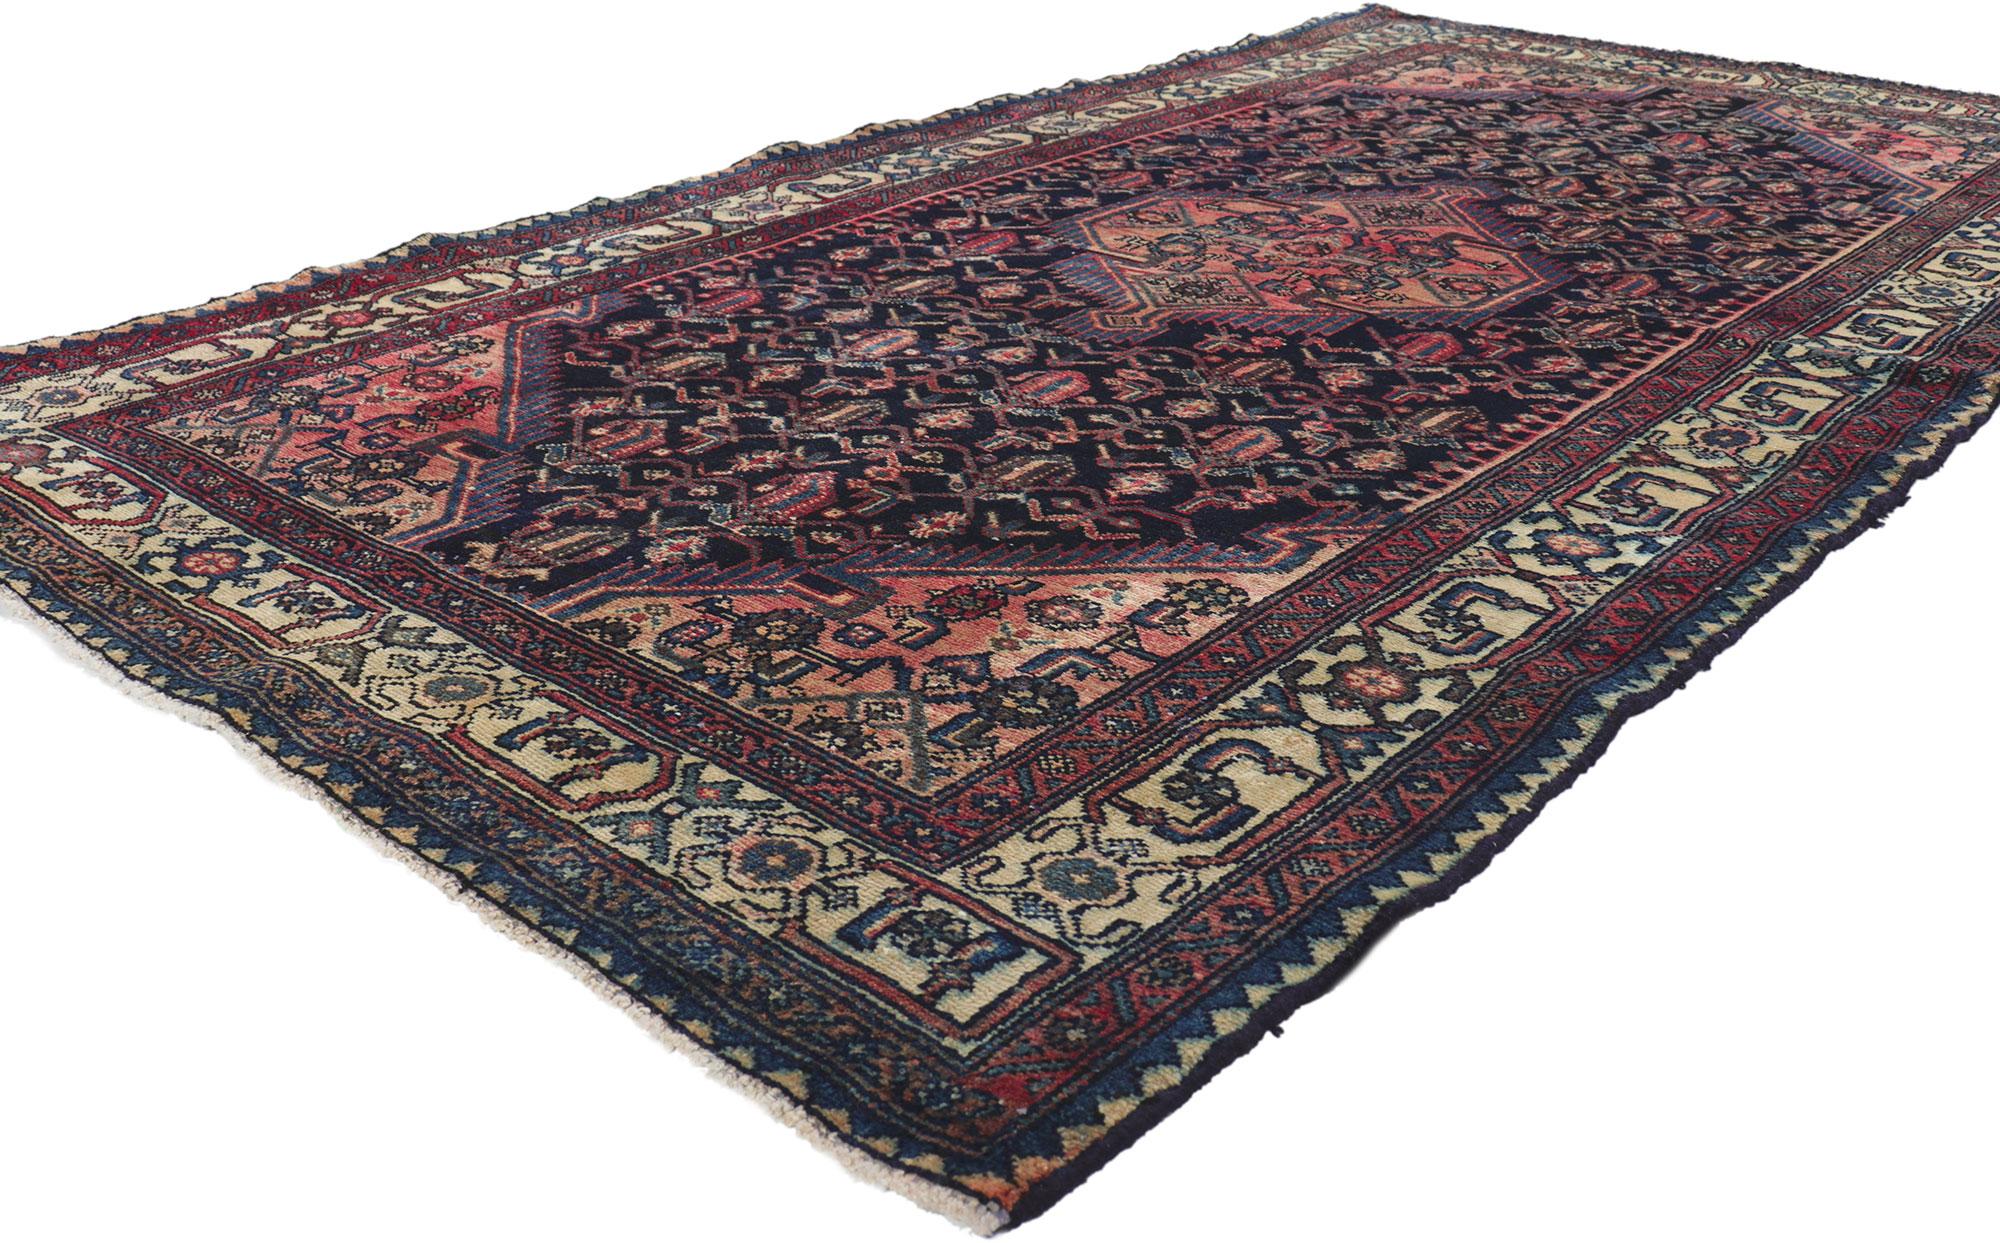 61185 Antiker persischer Hamadan-Teppich, 04.05 x 08.03.
Dieser handgeknüpfte antike persische Hamadan-Teppich aus Wolle beeindruckt durch seinen zeitlosen Stil, seine unglaublichen Details und seine Textur. Das auffällige Herati-Muster und die